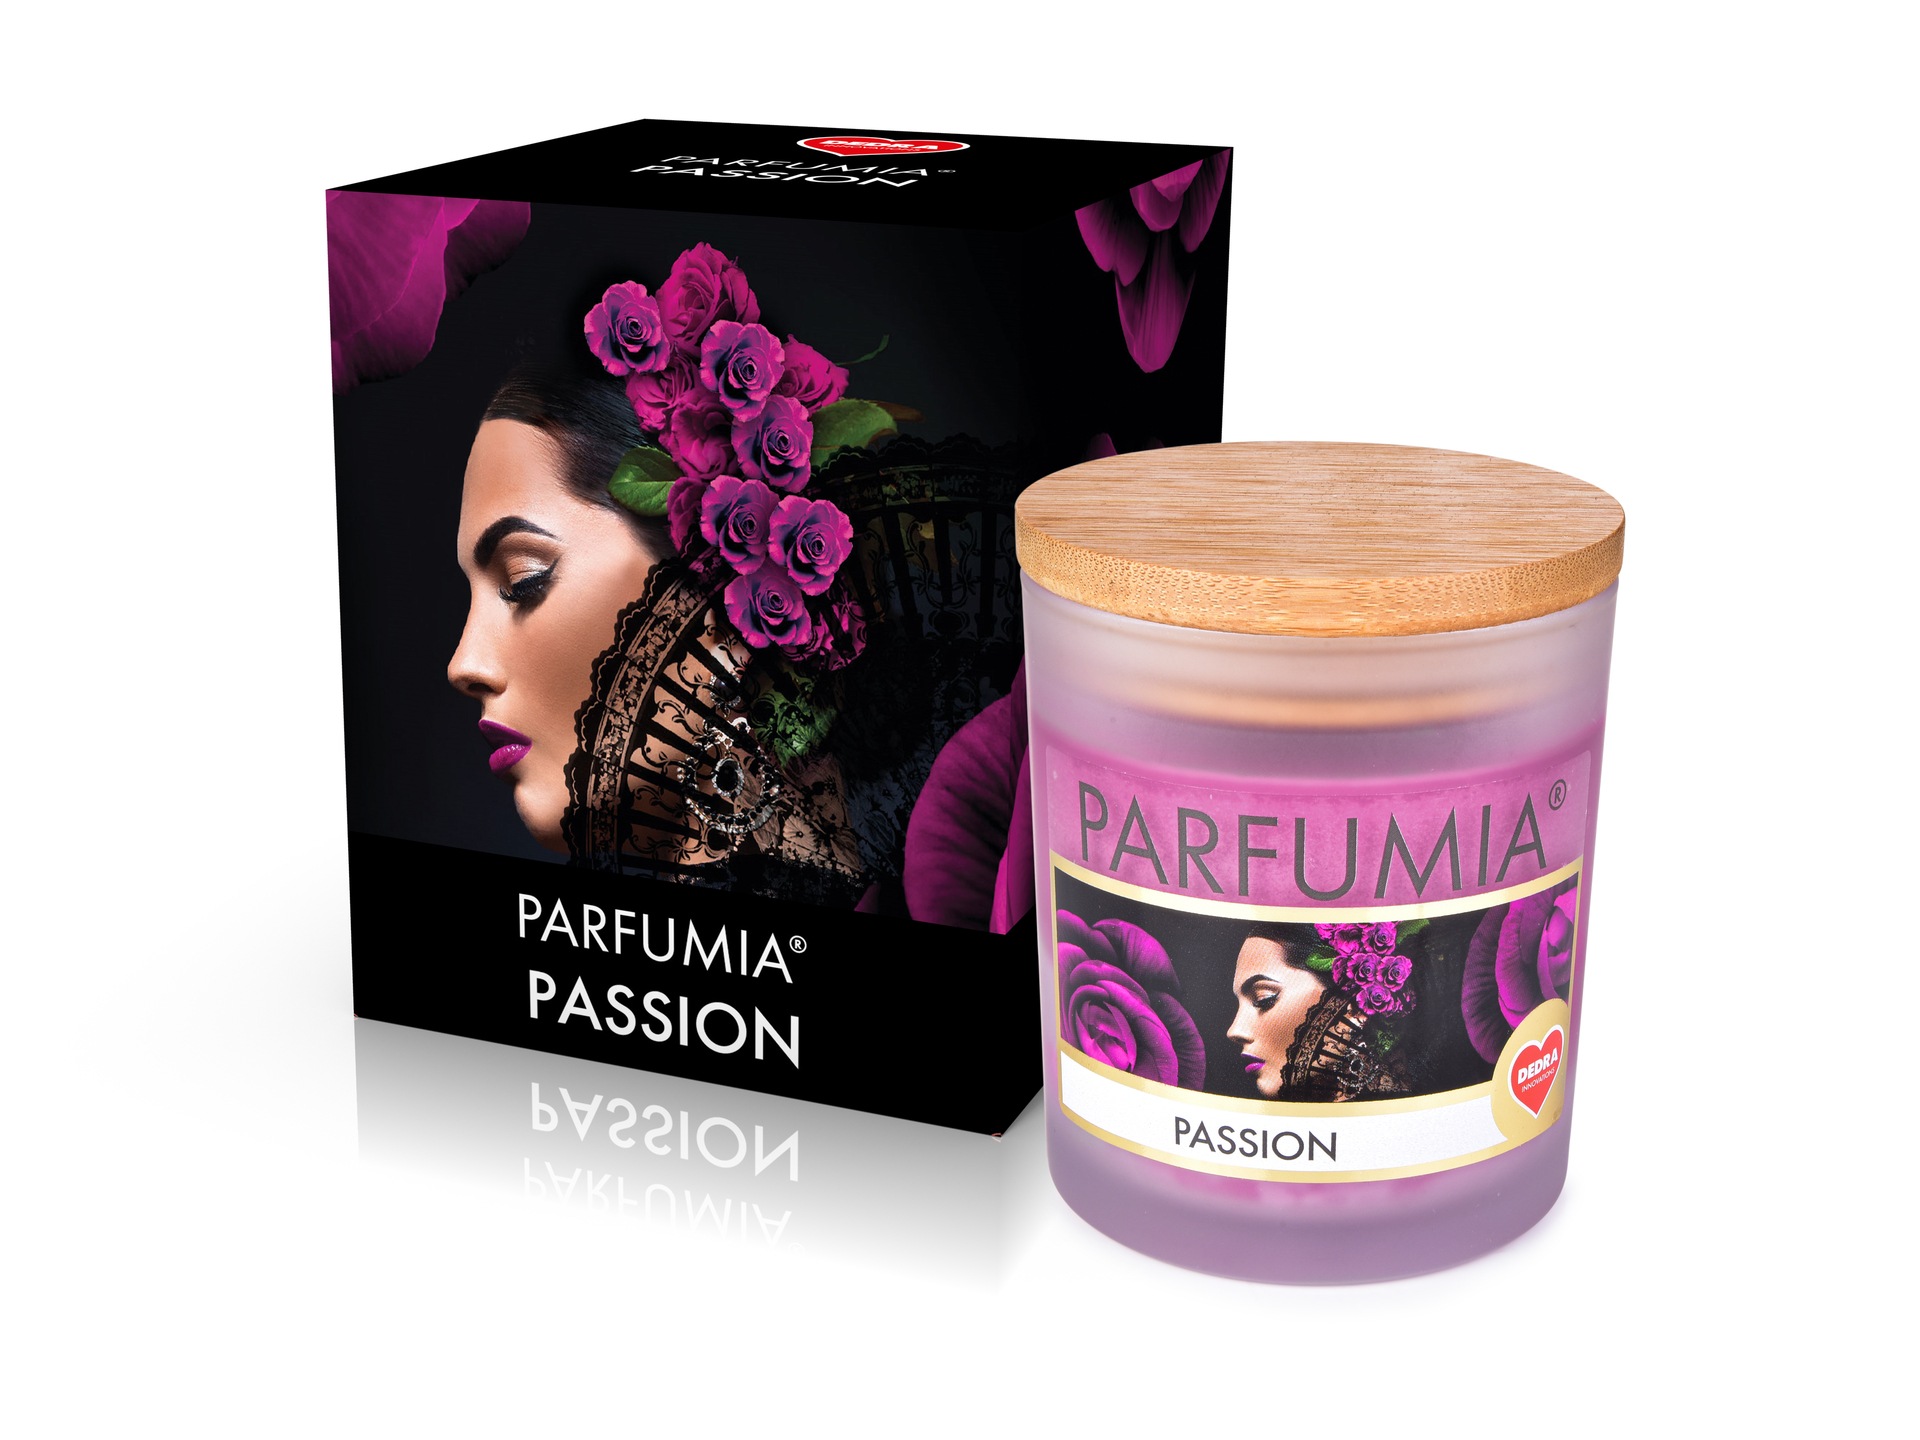 Sójová vonná EKO svíce Parfumia Passion